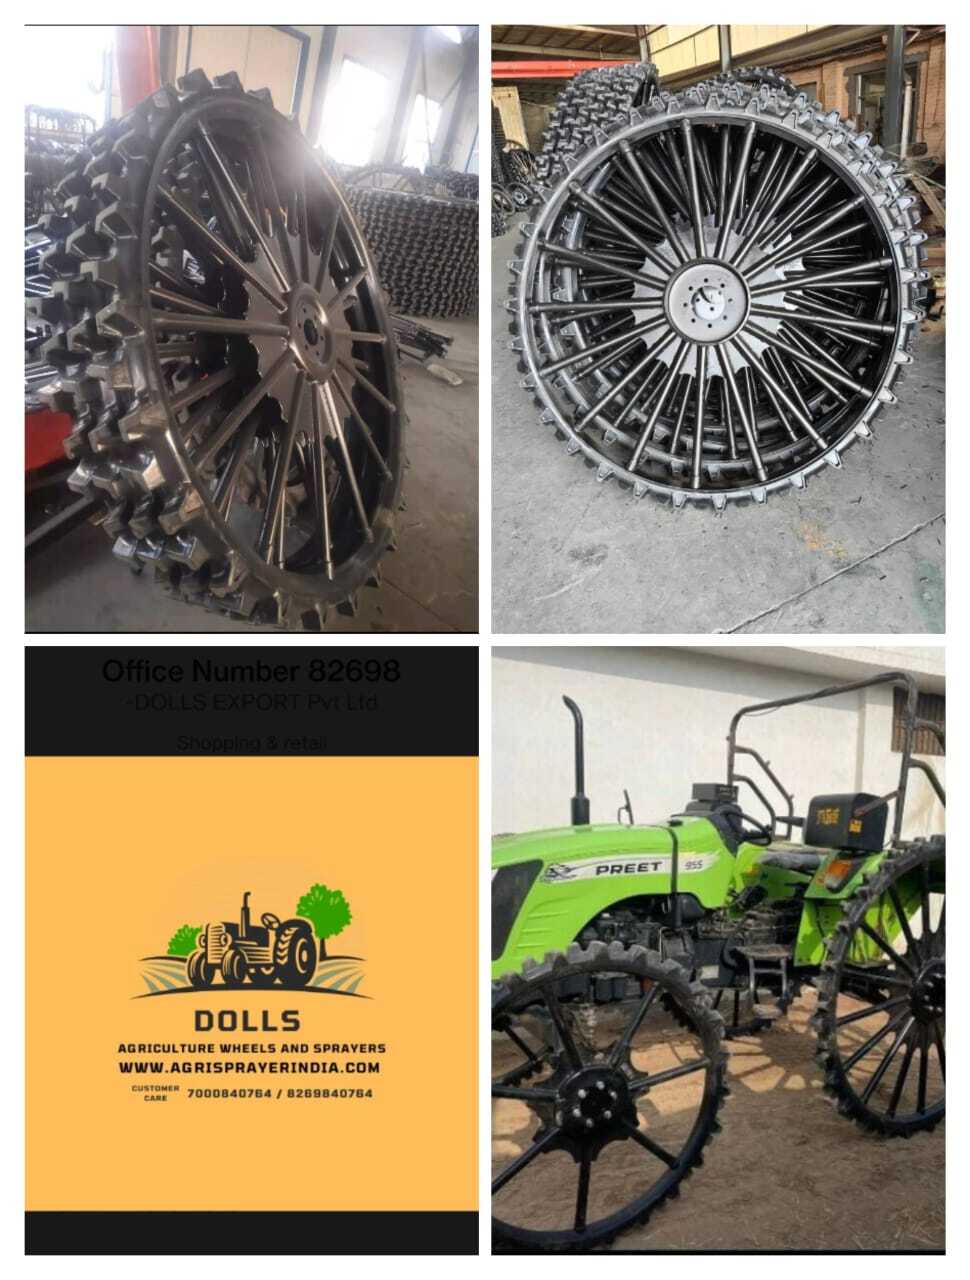 Tractor Tyer Wheel